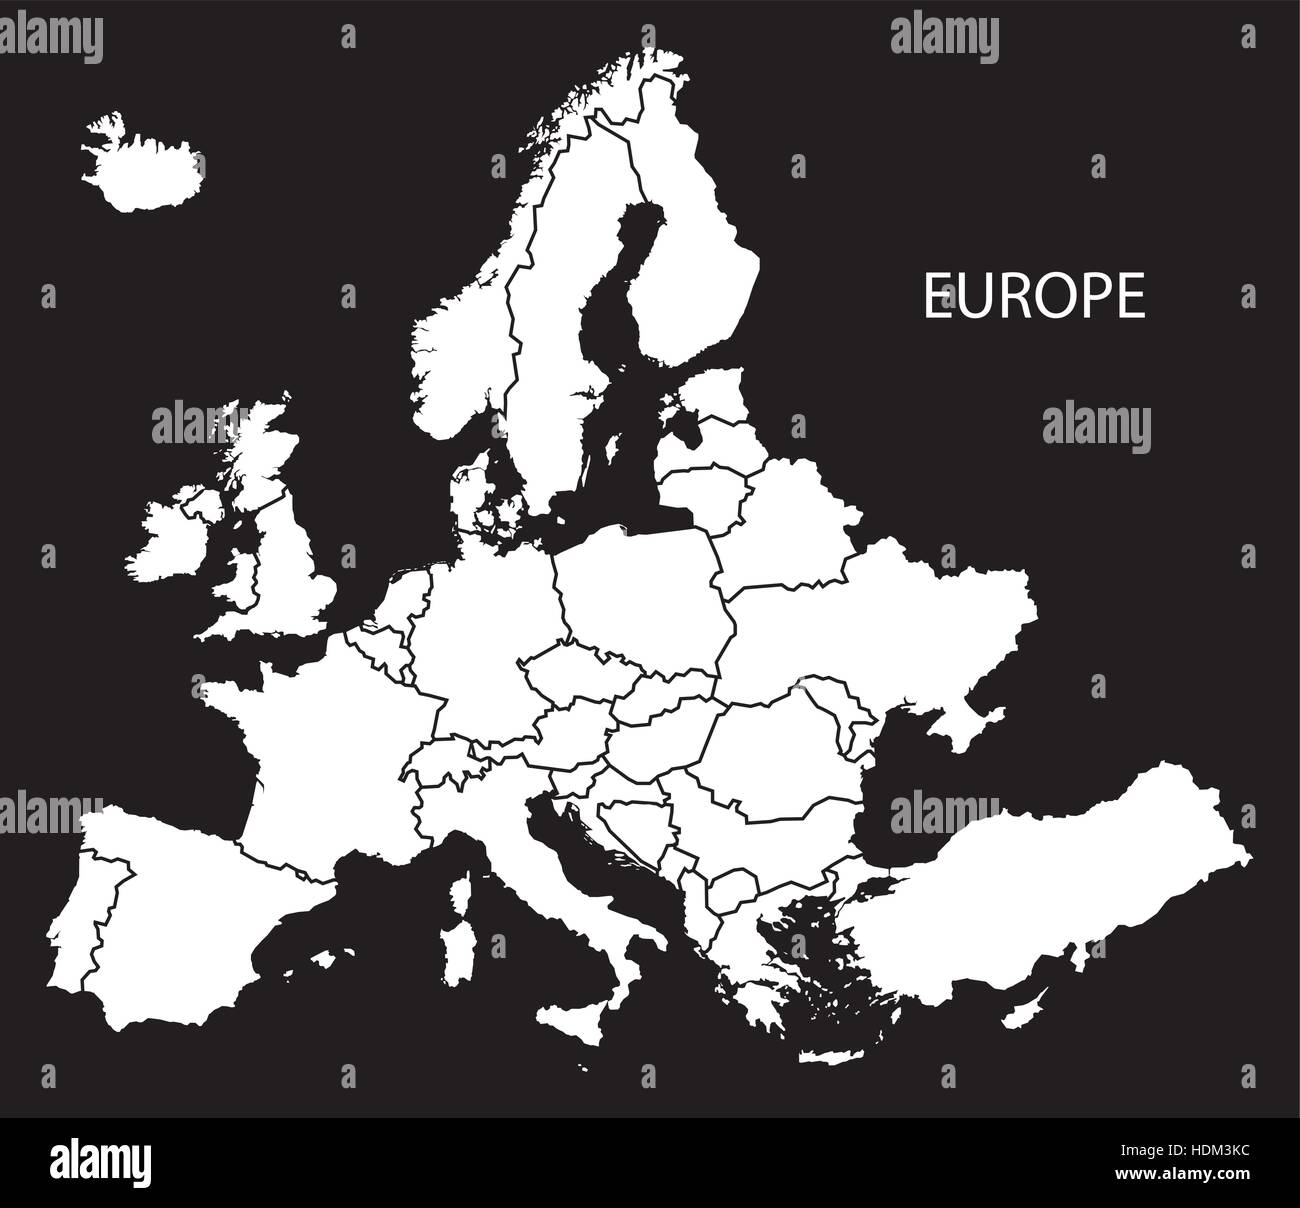 Europa mit Länder-Karte schwarz-weiß-Abbildung Stock Vektor